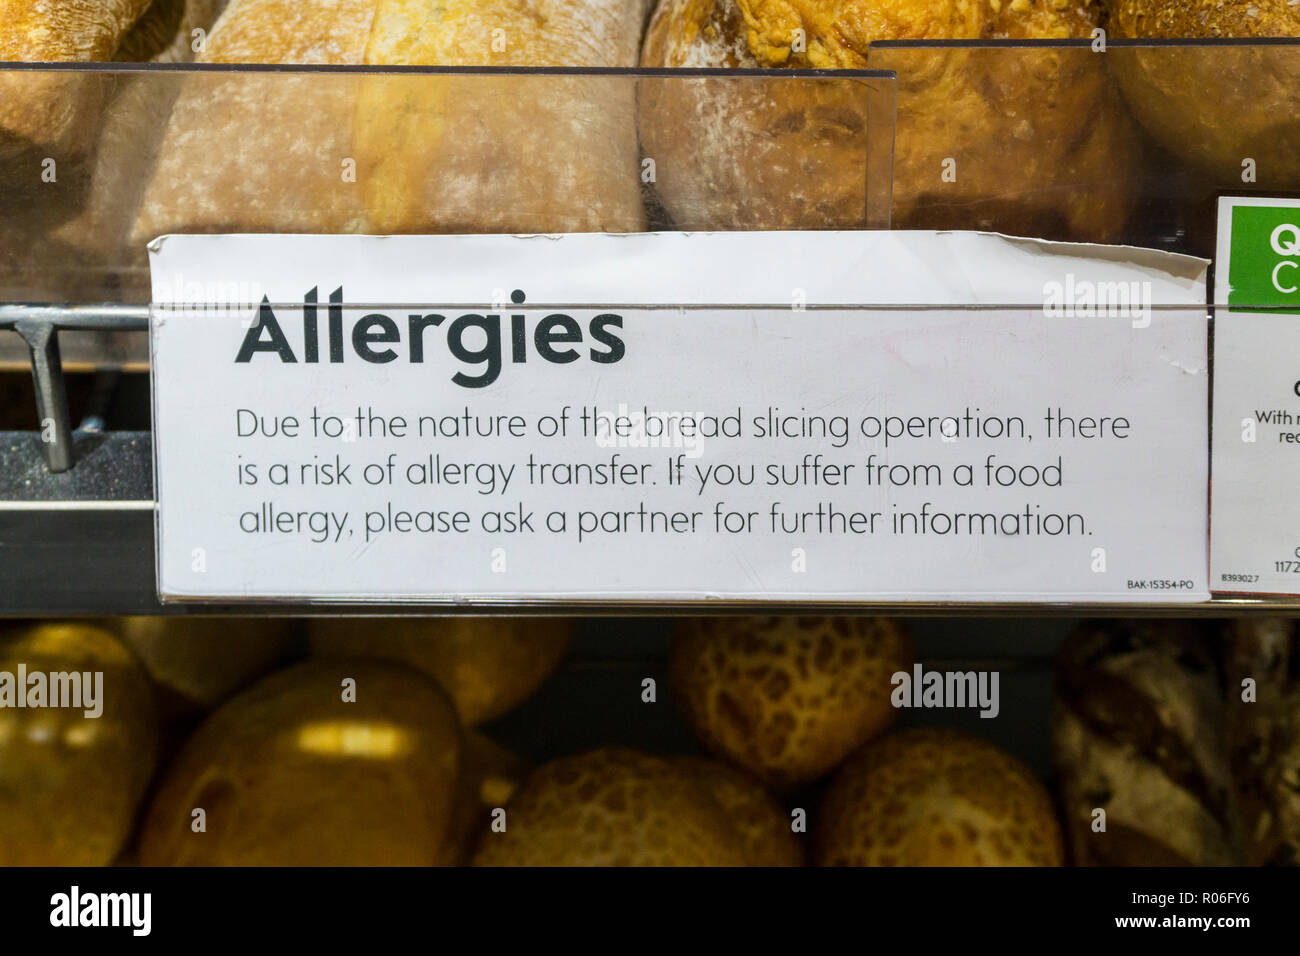 Une allergie Conseils étiquette sur un compteur de pain Waitrose met en garde contre les allergènes possibles ou d'allergie transfert. Banque D'Images